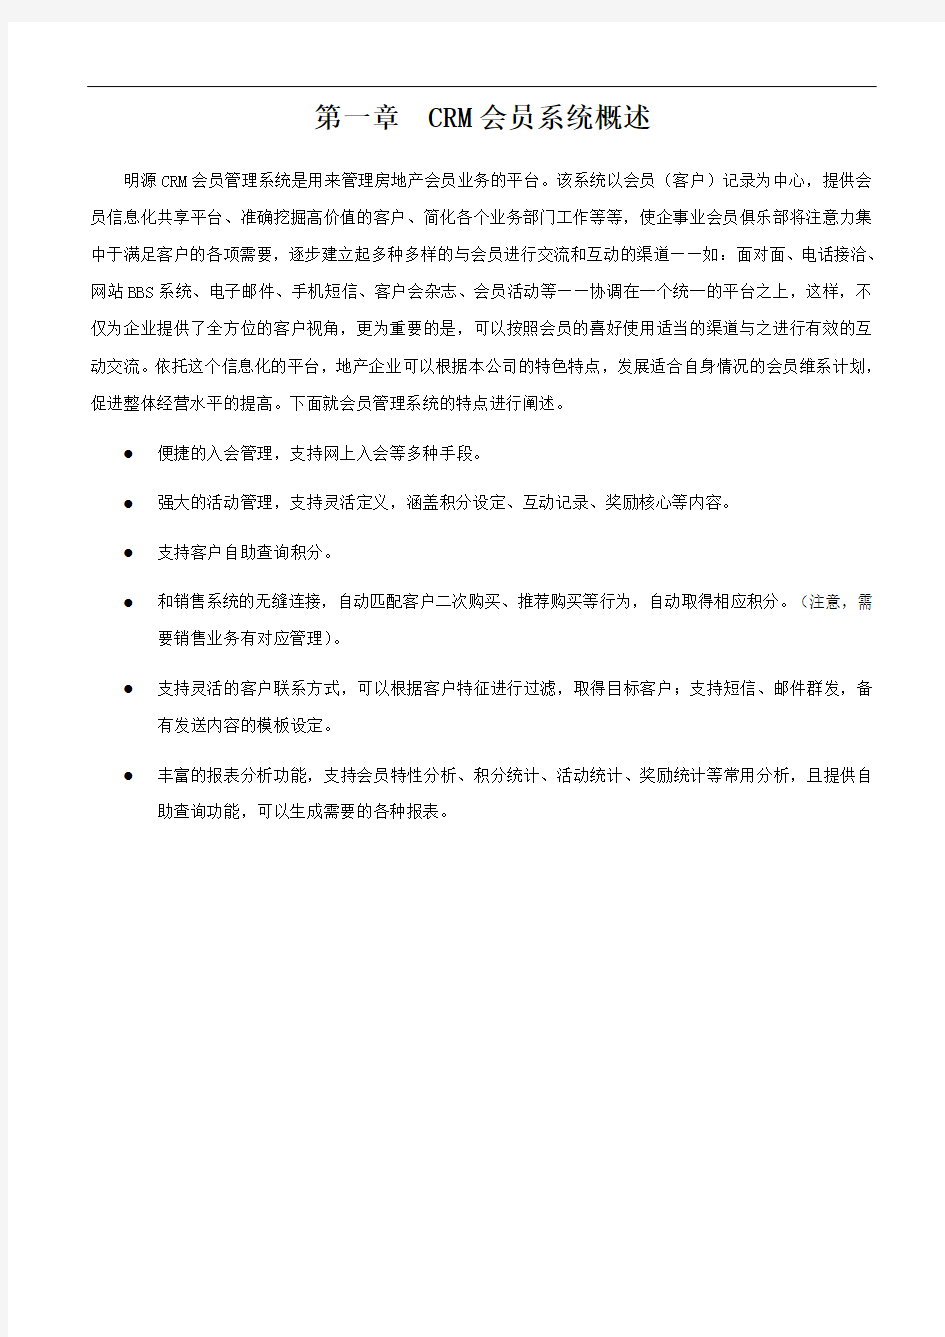 上海万客会会员系统操作手册